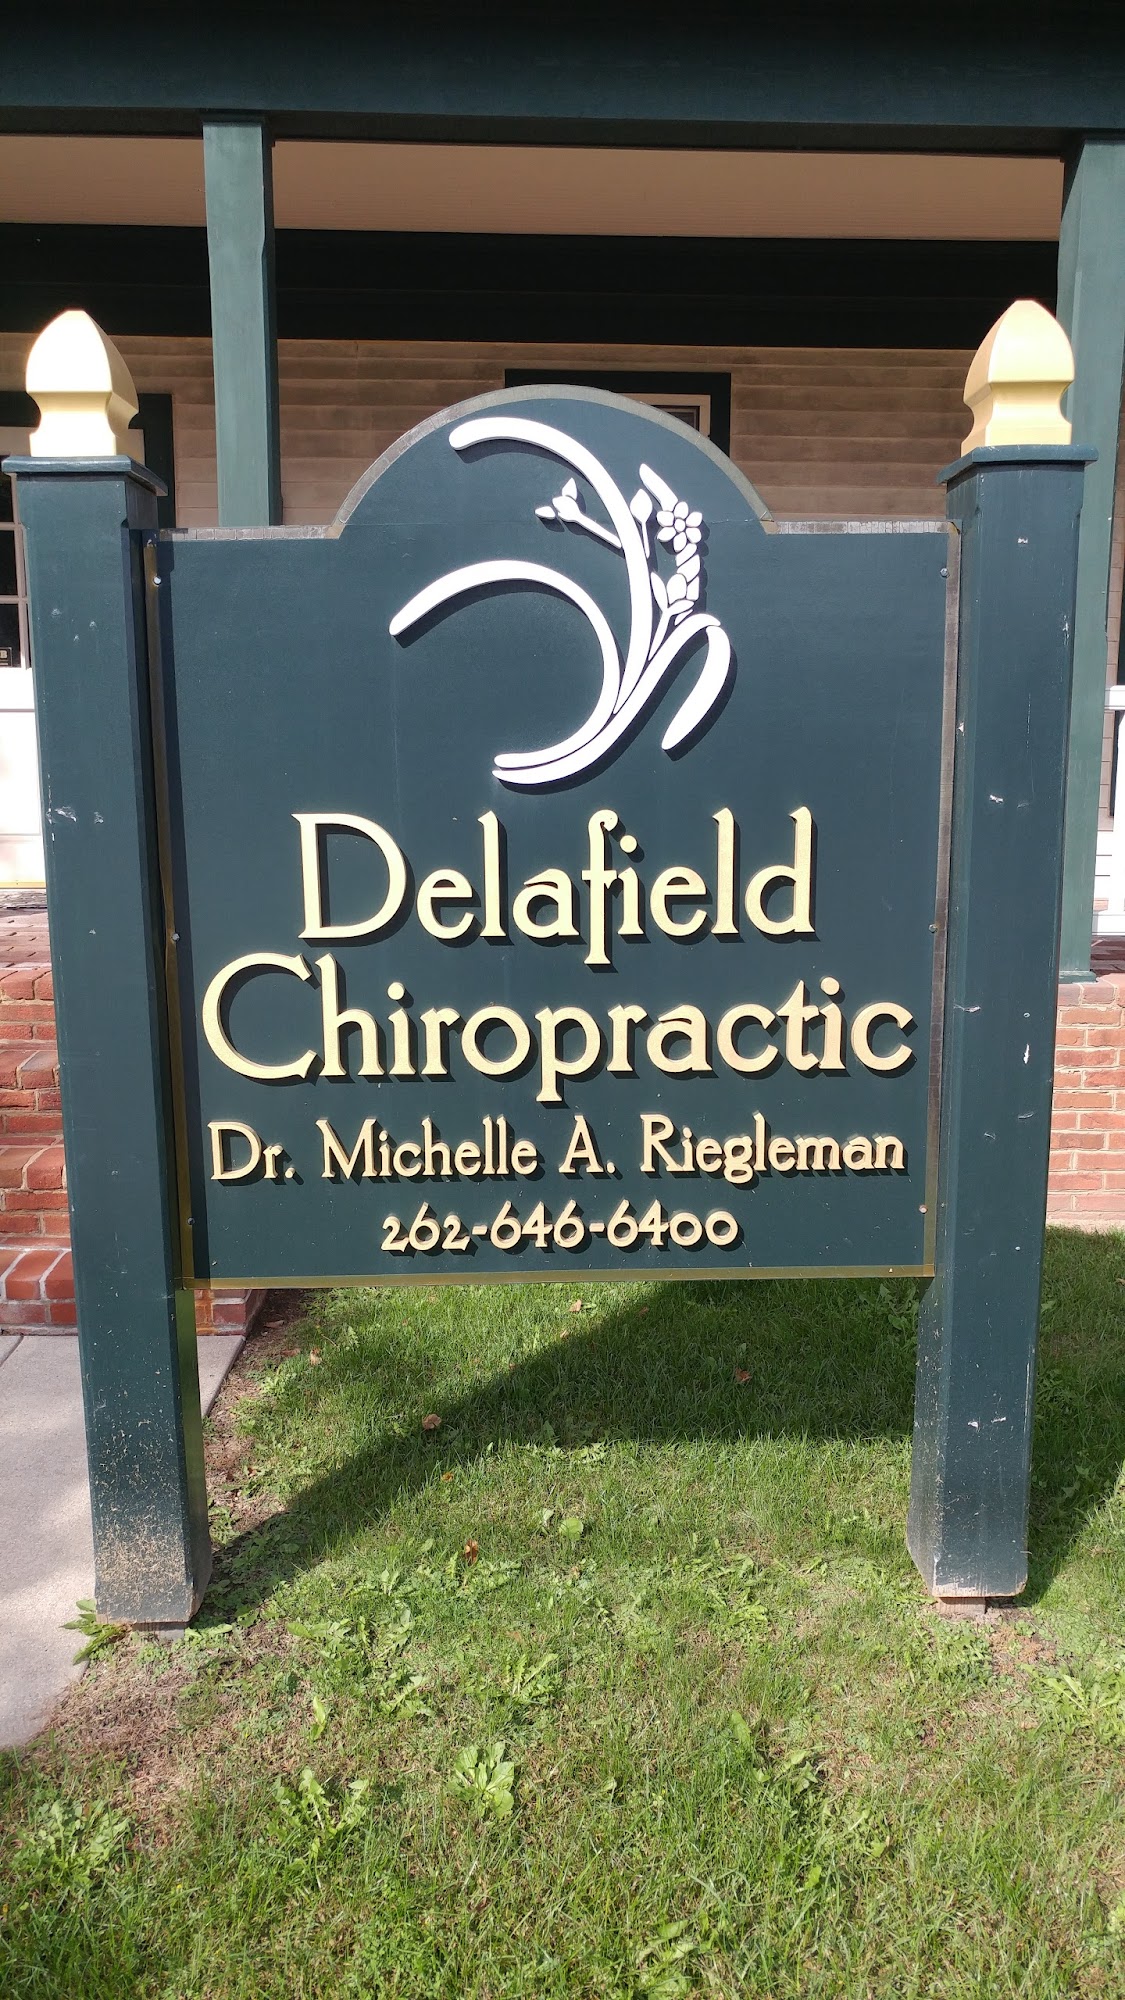 Delafield Chiropractic 403 Genesee Street, Delafield Wisconsin 53018